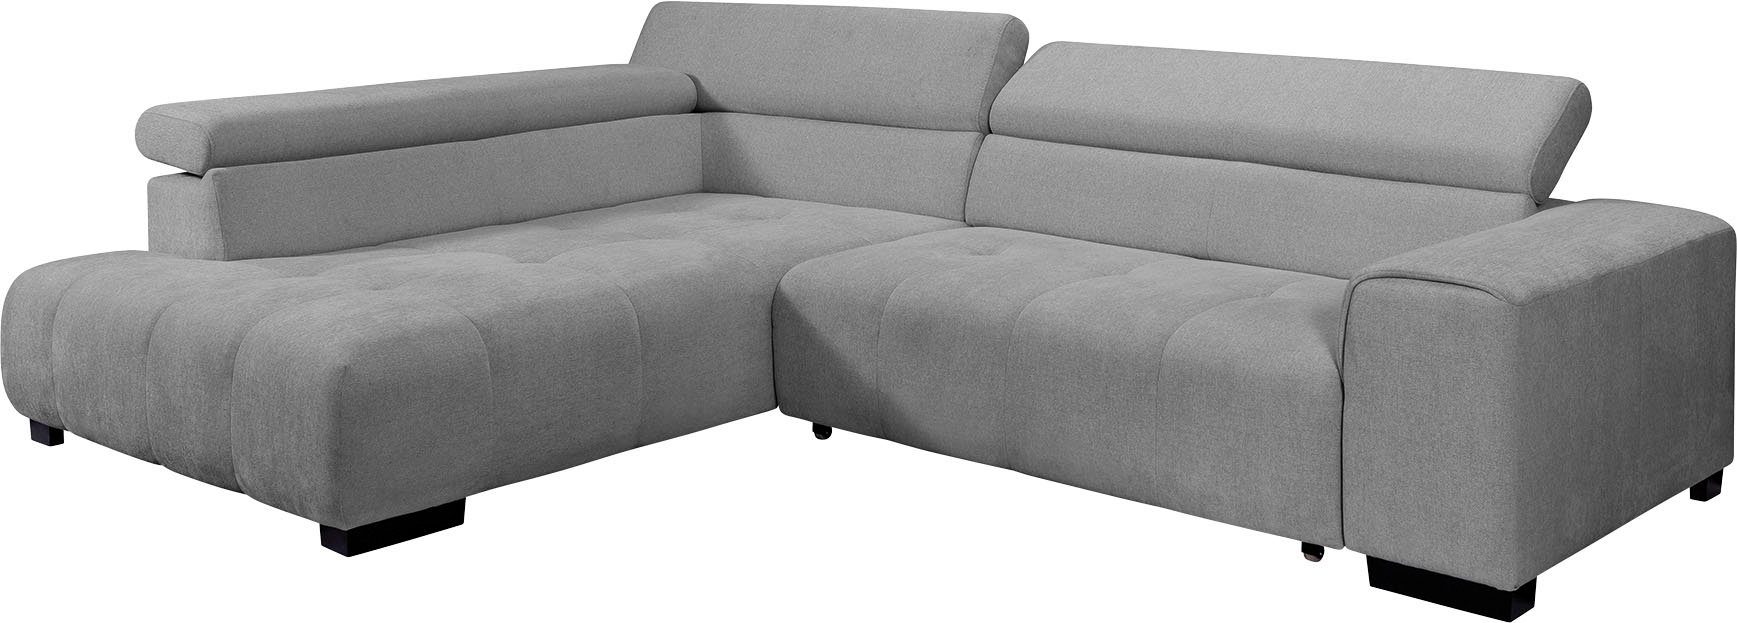 exxpo und verstellbaren Bettfunktion sofa - mit Kissen fashion Ecksofa, 3 Kopfstützen, wahlweise mit